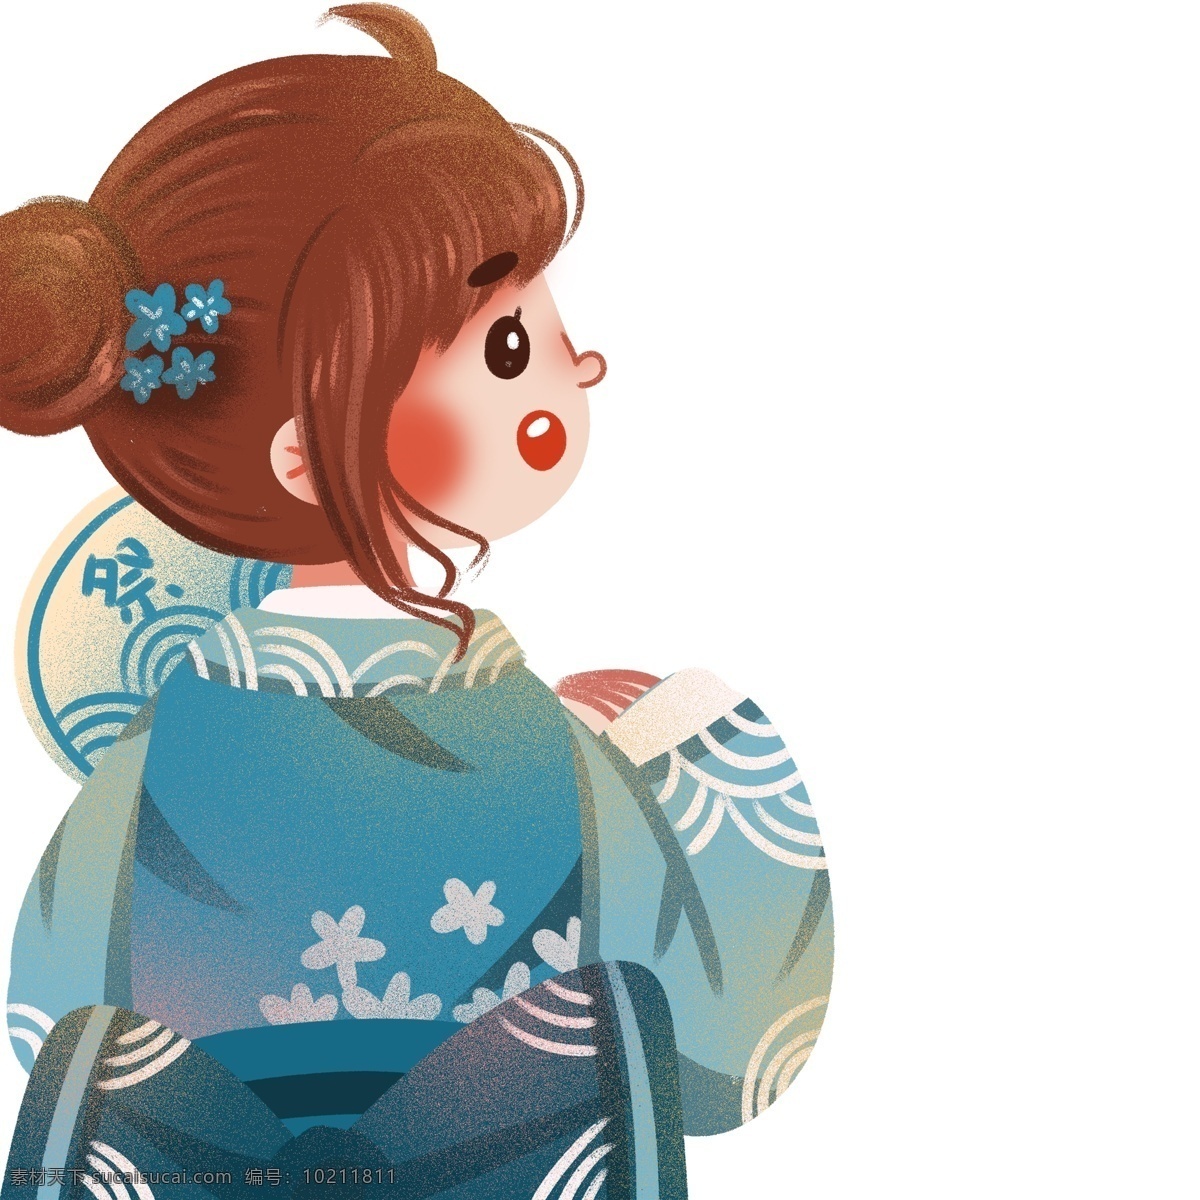 清新 可爱 穿着 和服 女孩子 卡通 女孩 日本 蓝色 插画 人物